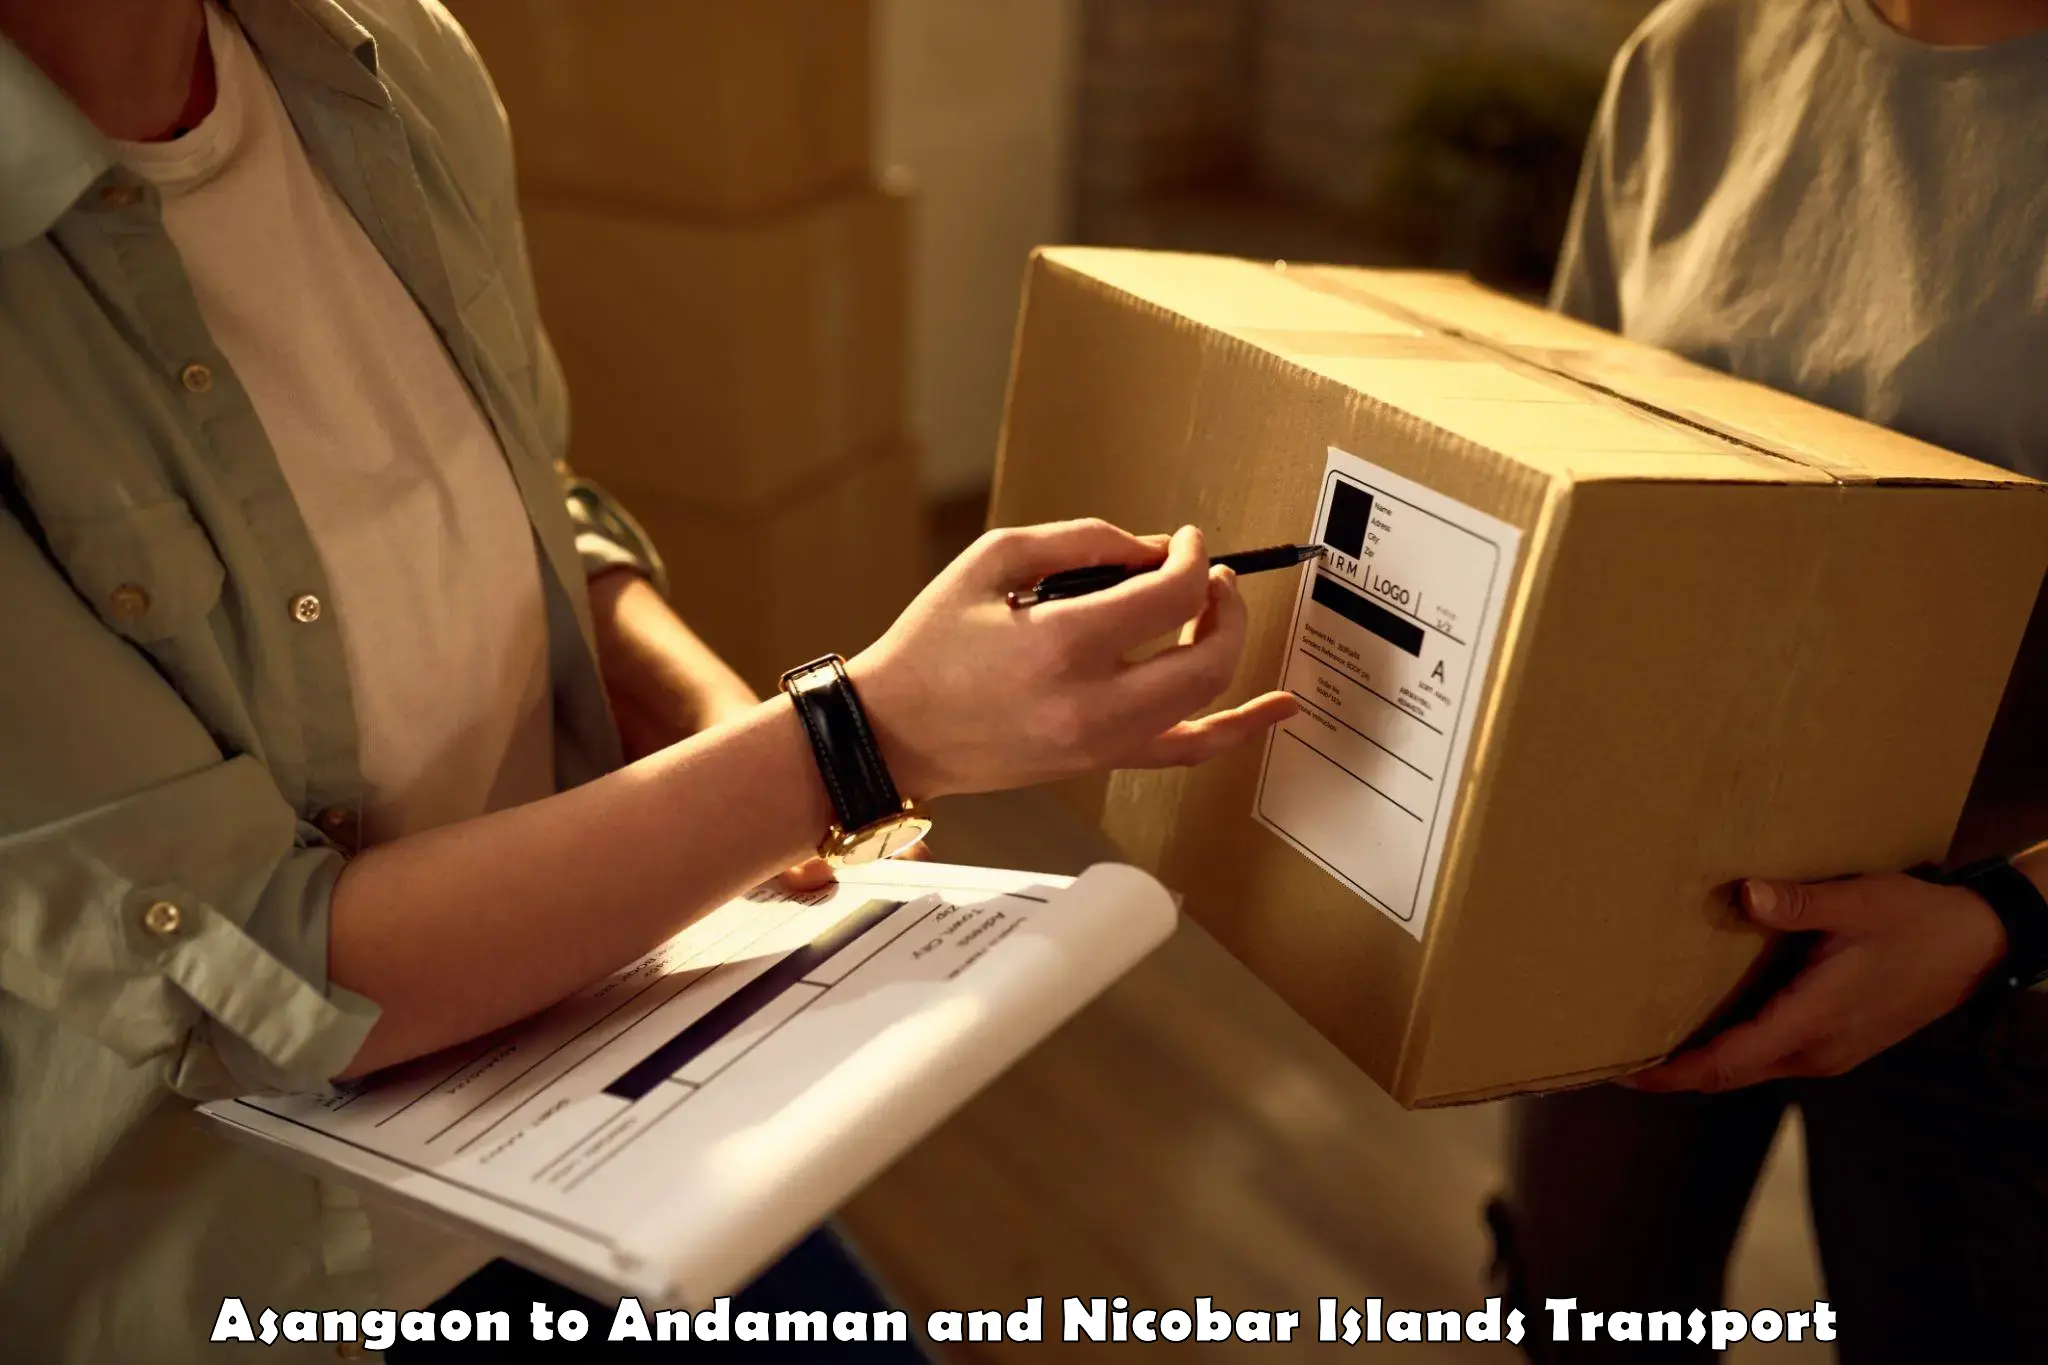 Furniture transport service Asangaon to Andaman and Nicobar Islands